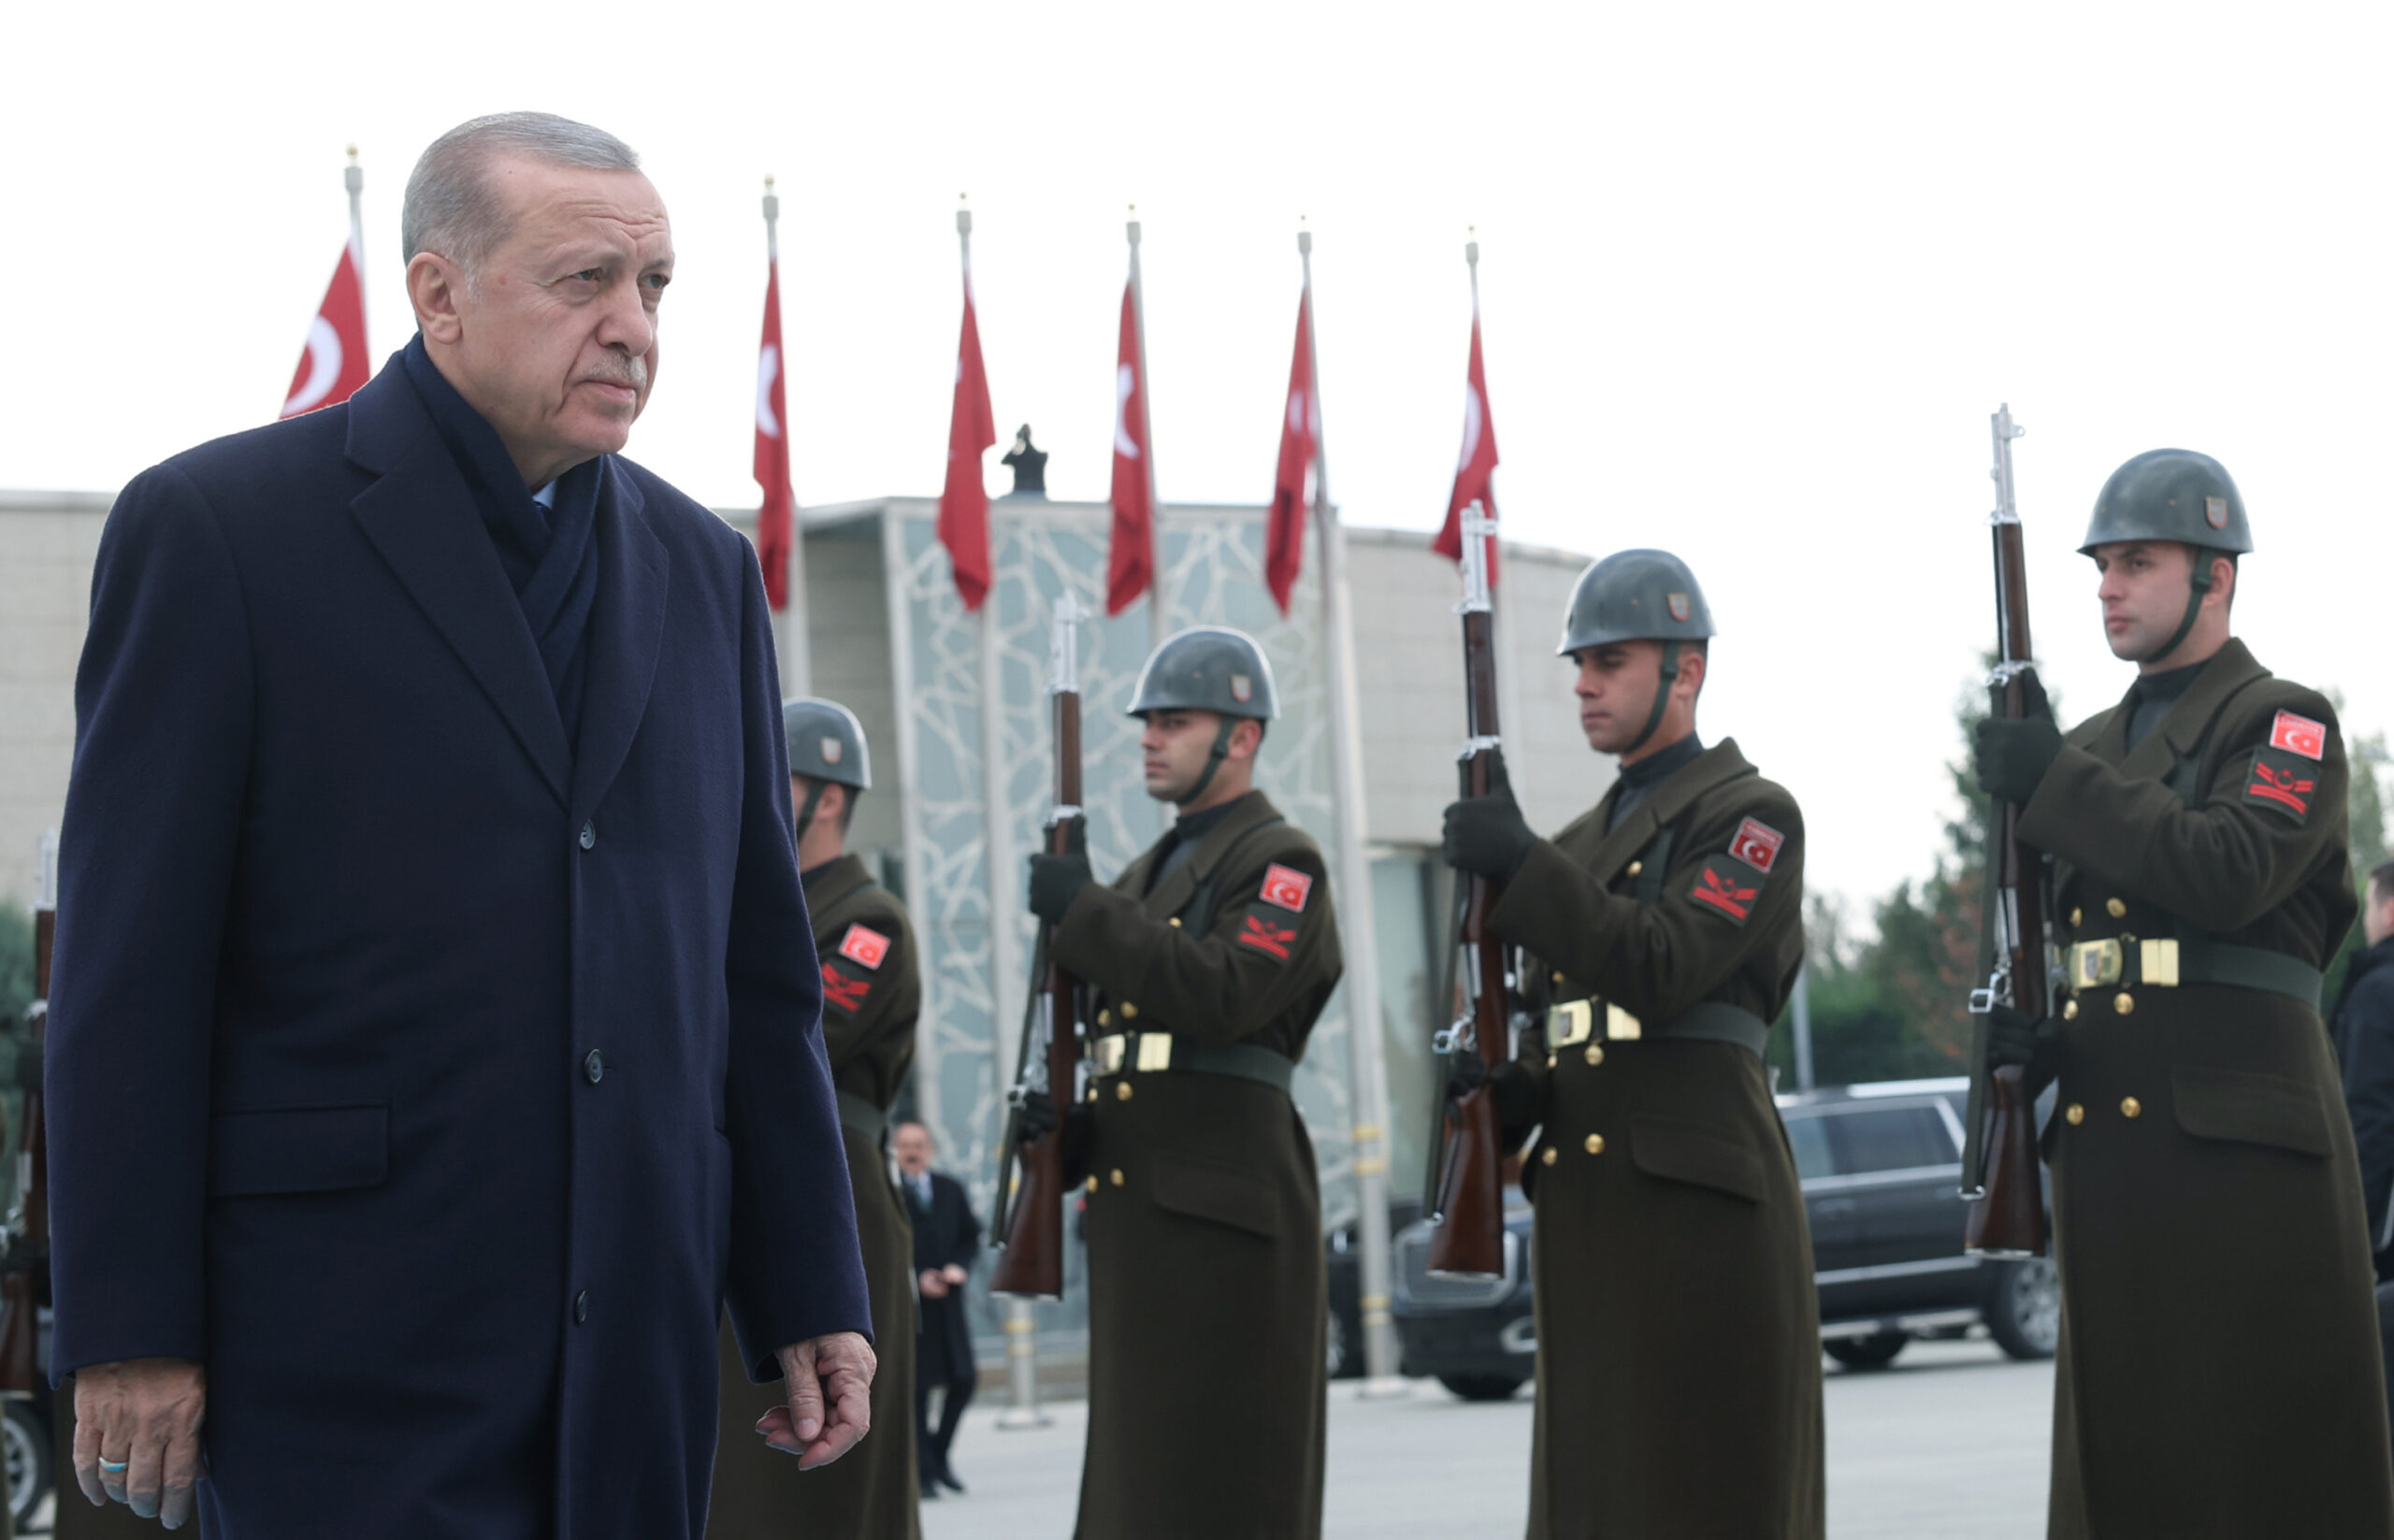 Türkiye Cumhuriyeti Cumhurbaşkanı Recep Tayyip Erdoğan, Cezayir’e resmi bir ziyaret gerçekleştirdi.